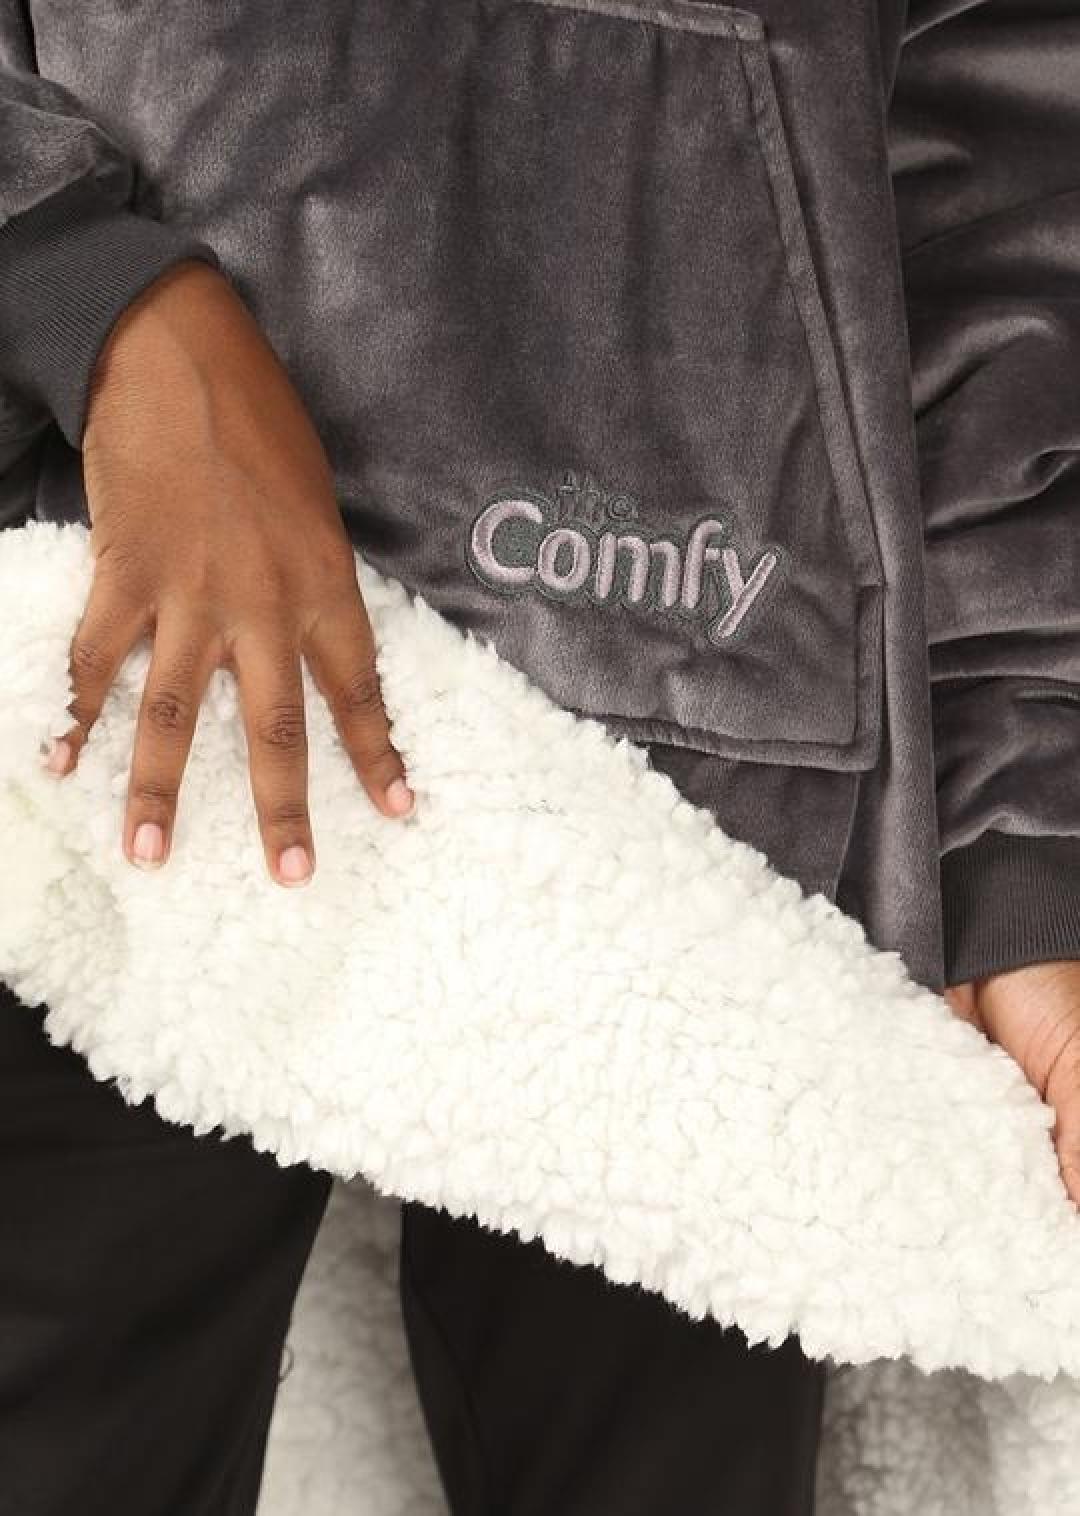 The Comfy Original Jr. Wearable Blanket